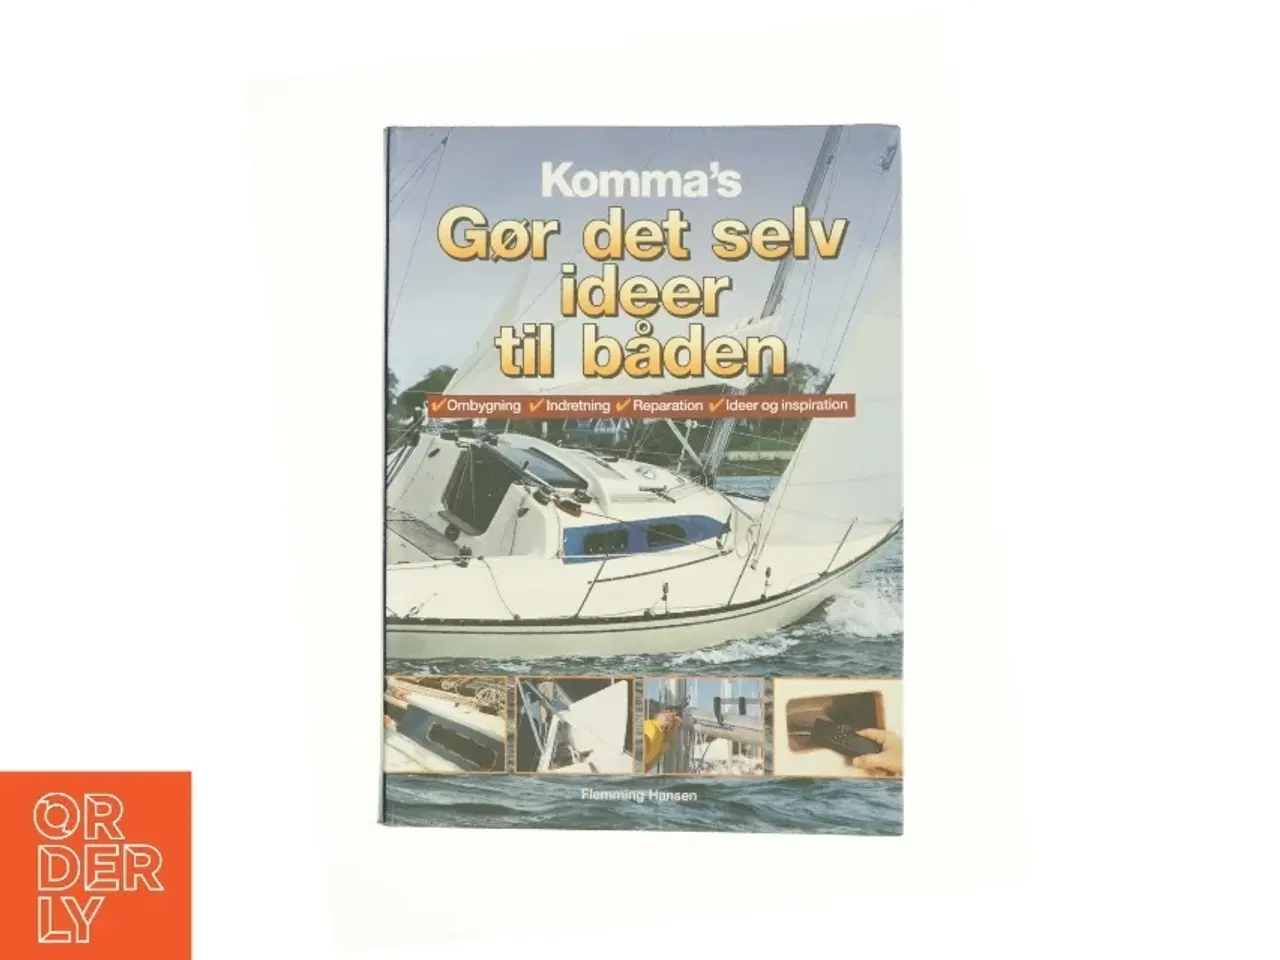 Billede 1 - Komma's gør det selv-ideer til båden af Flemming Hansen (Bog)